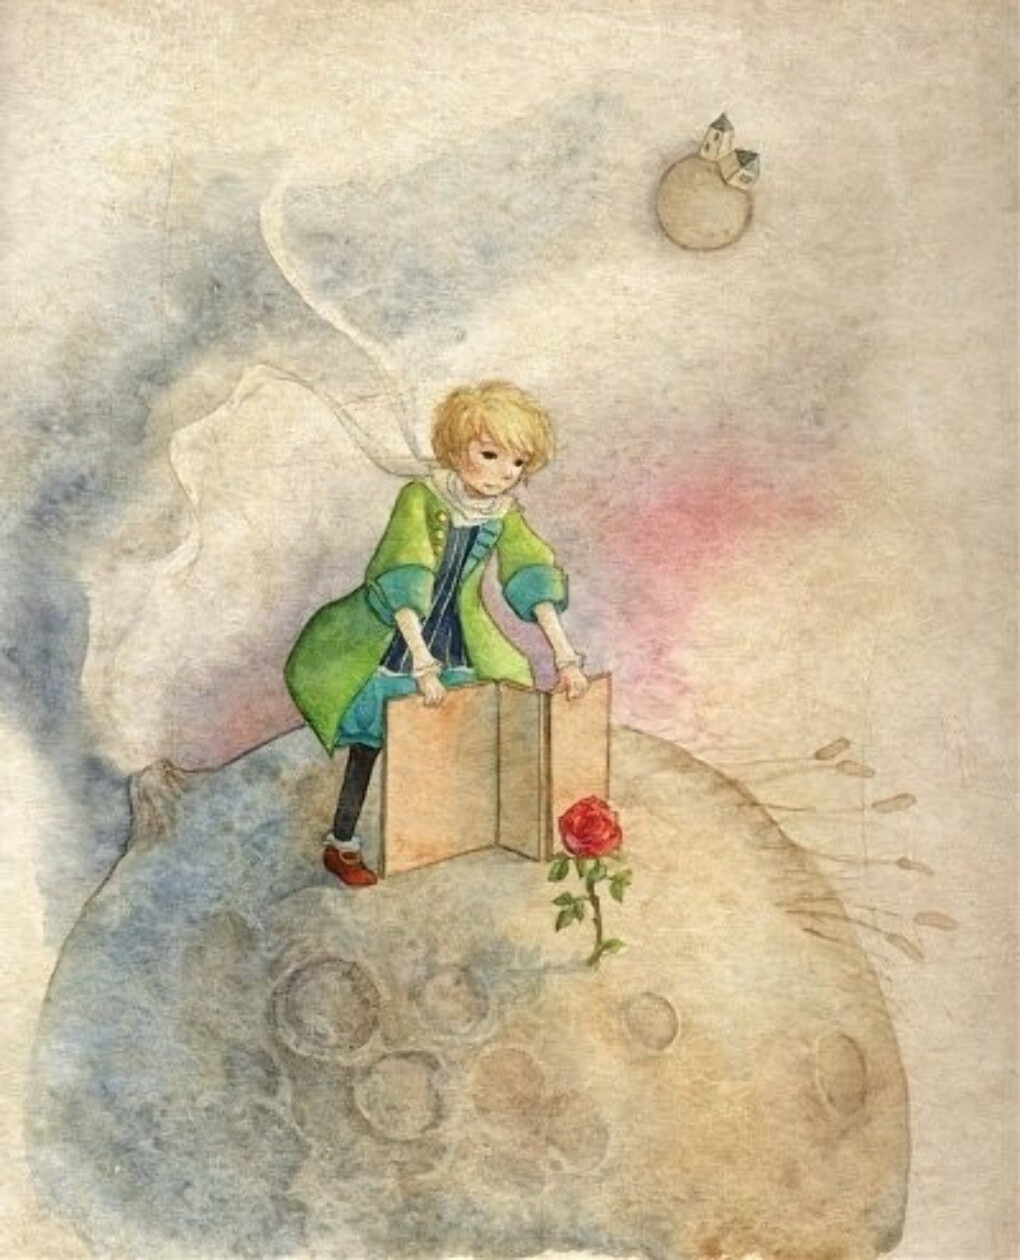 Маленький принц жил на маленькой планете